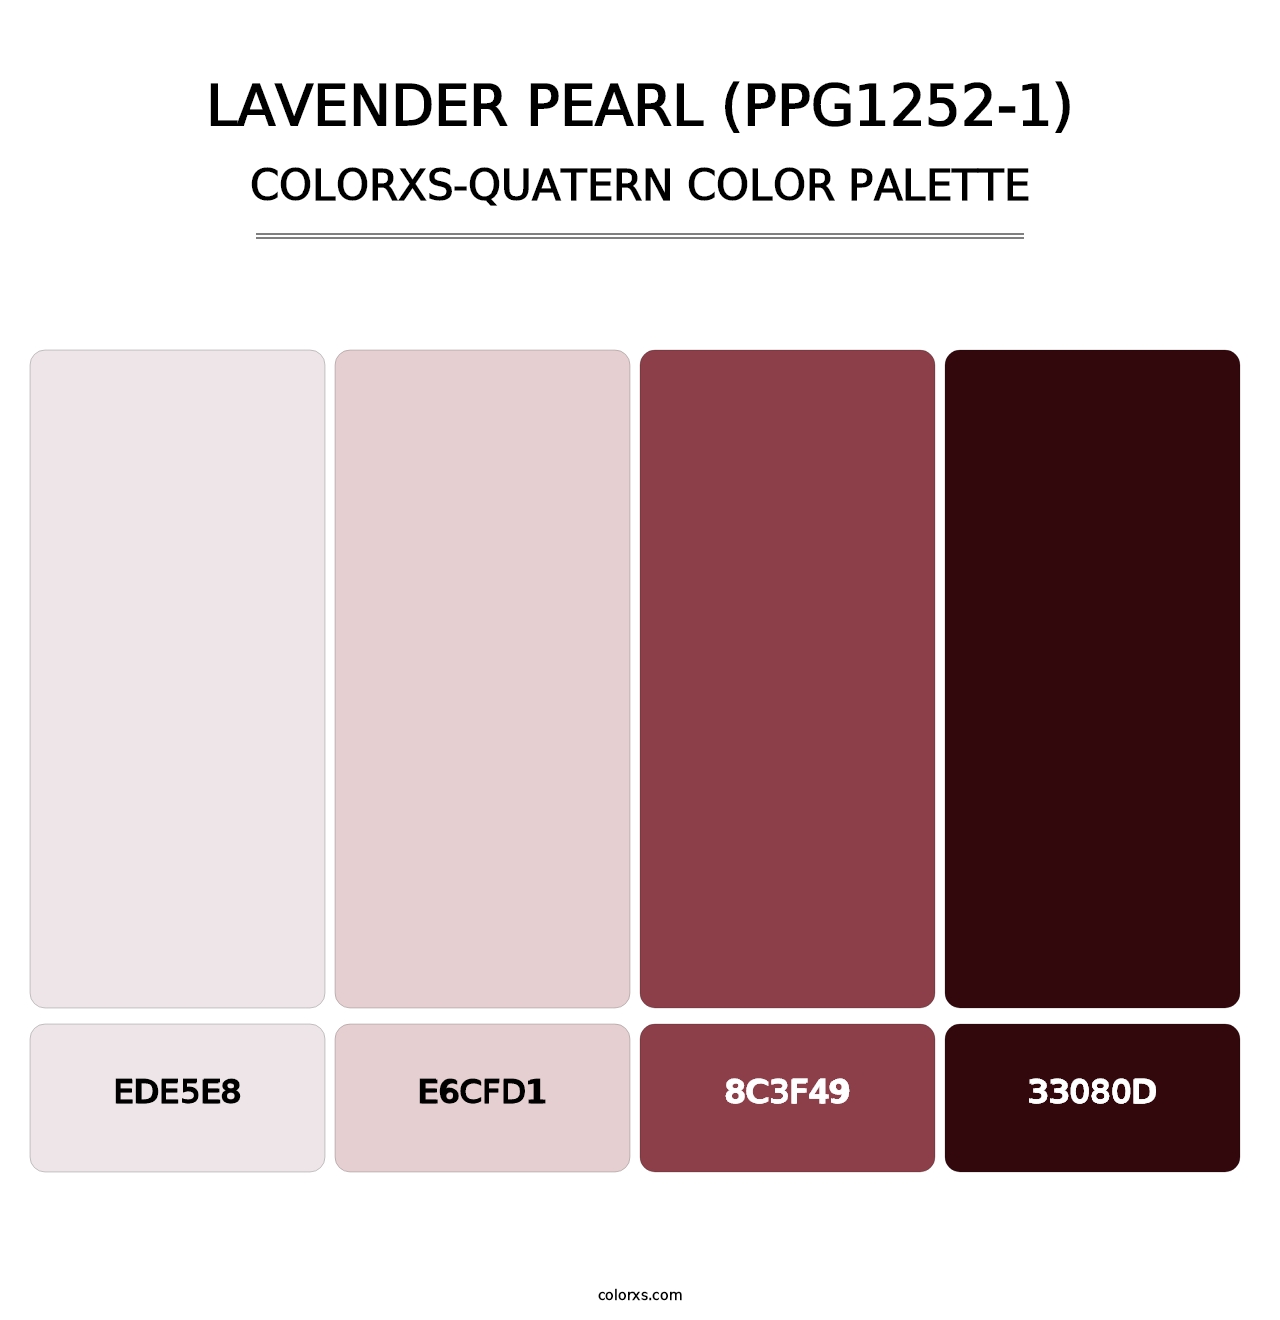 Lavender Pearl (PPG1252-1) - Colorxs Quatern Palette